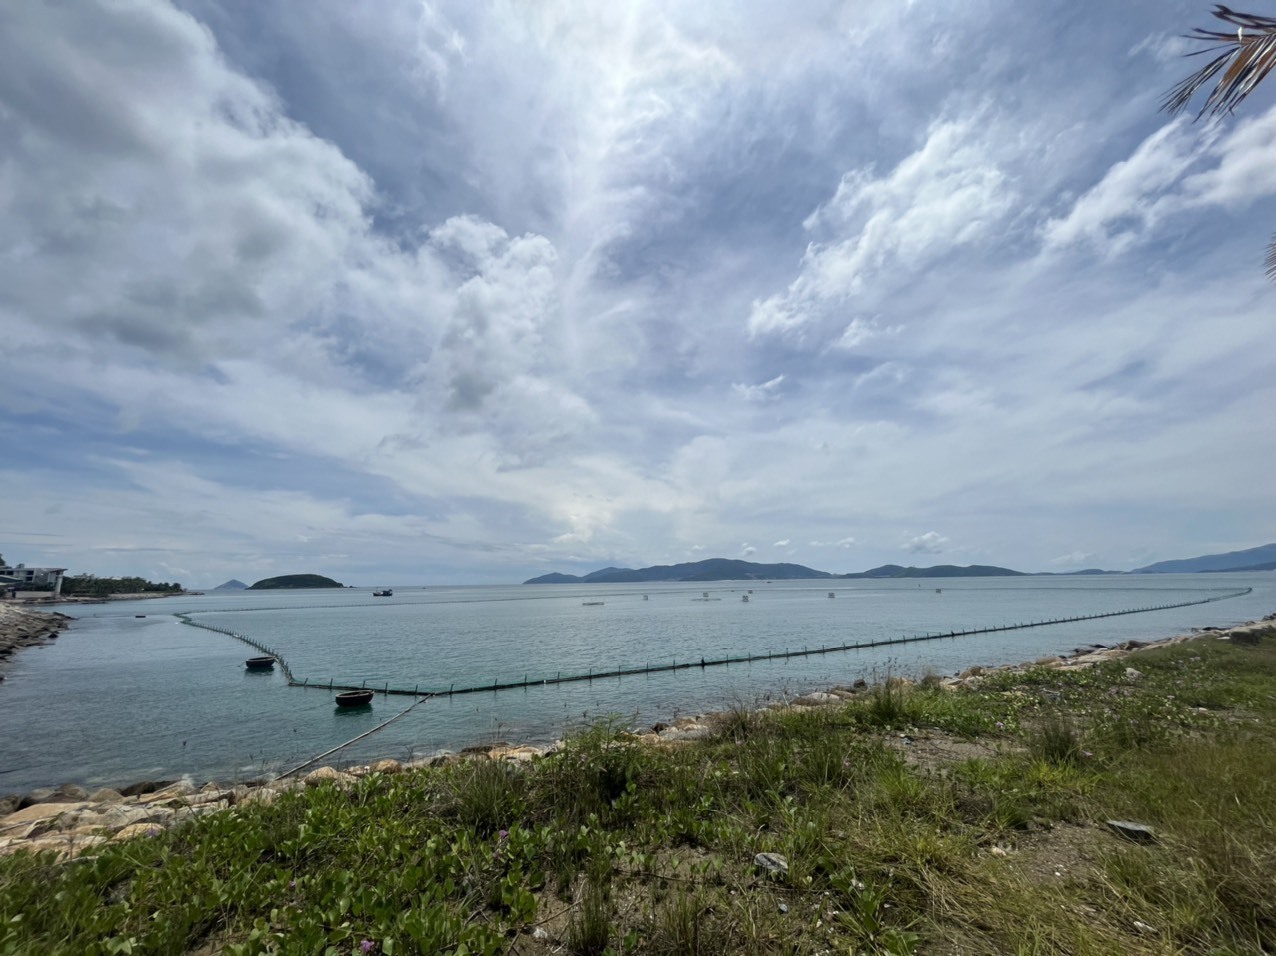 Tập đoàn Crystal Bay tháo giàn phao lấn chiếm 2ha mặt biển ở Nha Trang